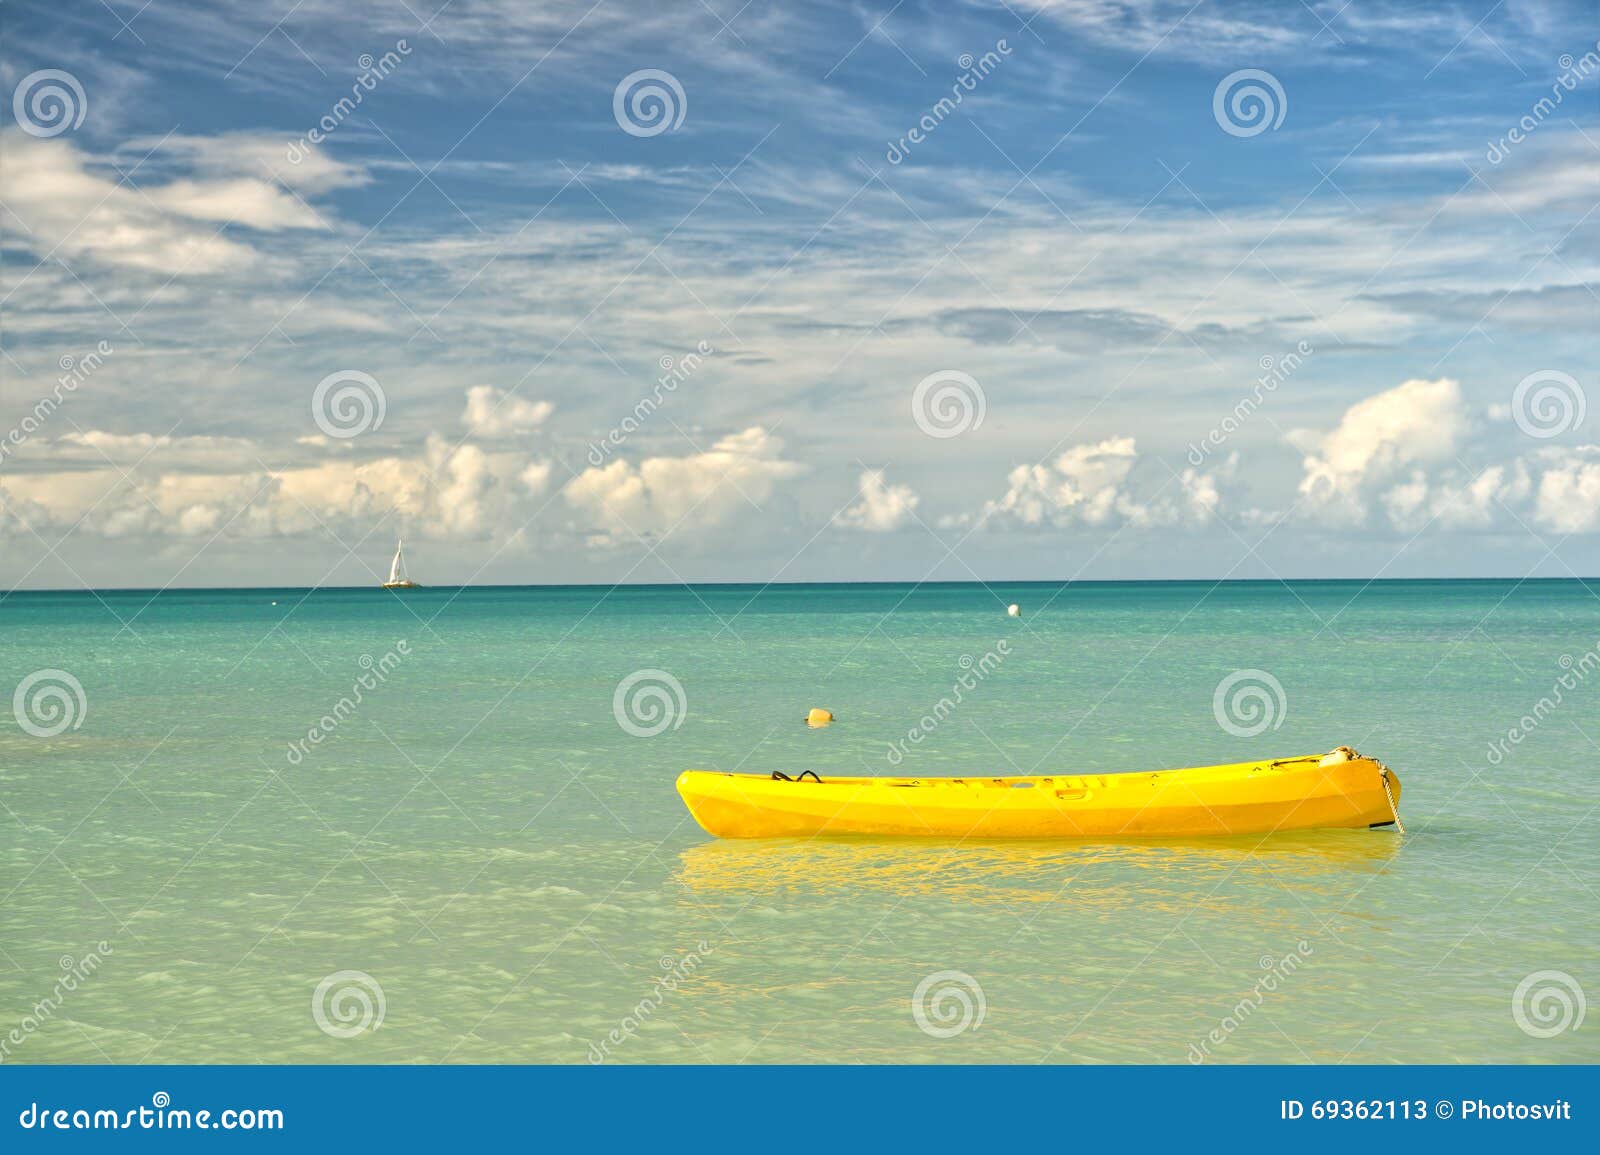 Gele boot in overzees. Exotisch mooi marien strand van Antigua St Johns met gele golfagent op blauw water en hemel met kleine wolken in zonnig weer openlucht op natuurlijke achtergrond